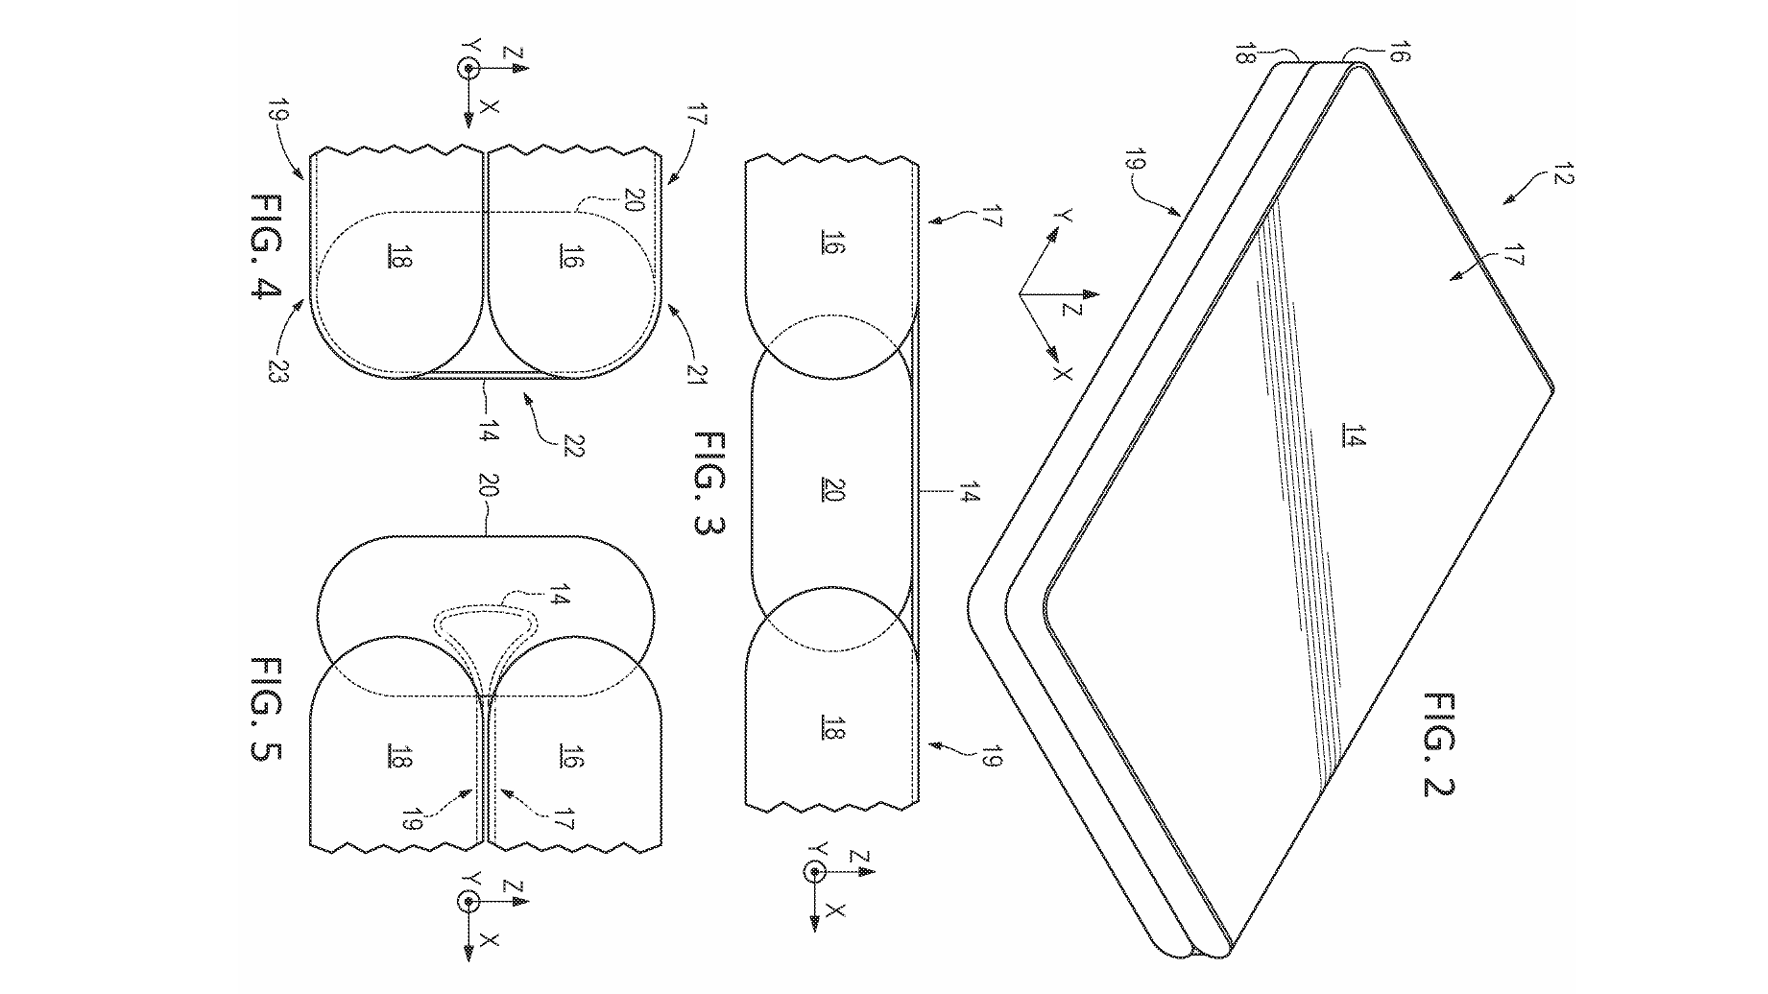 Microsoft Foldable Patent